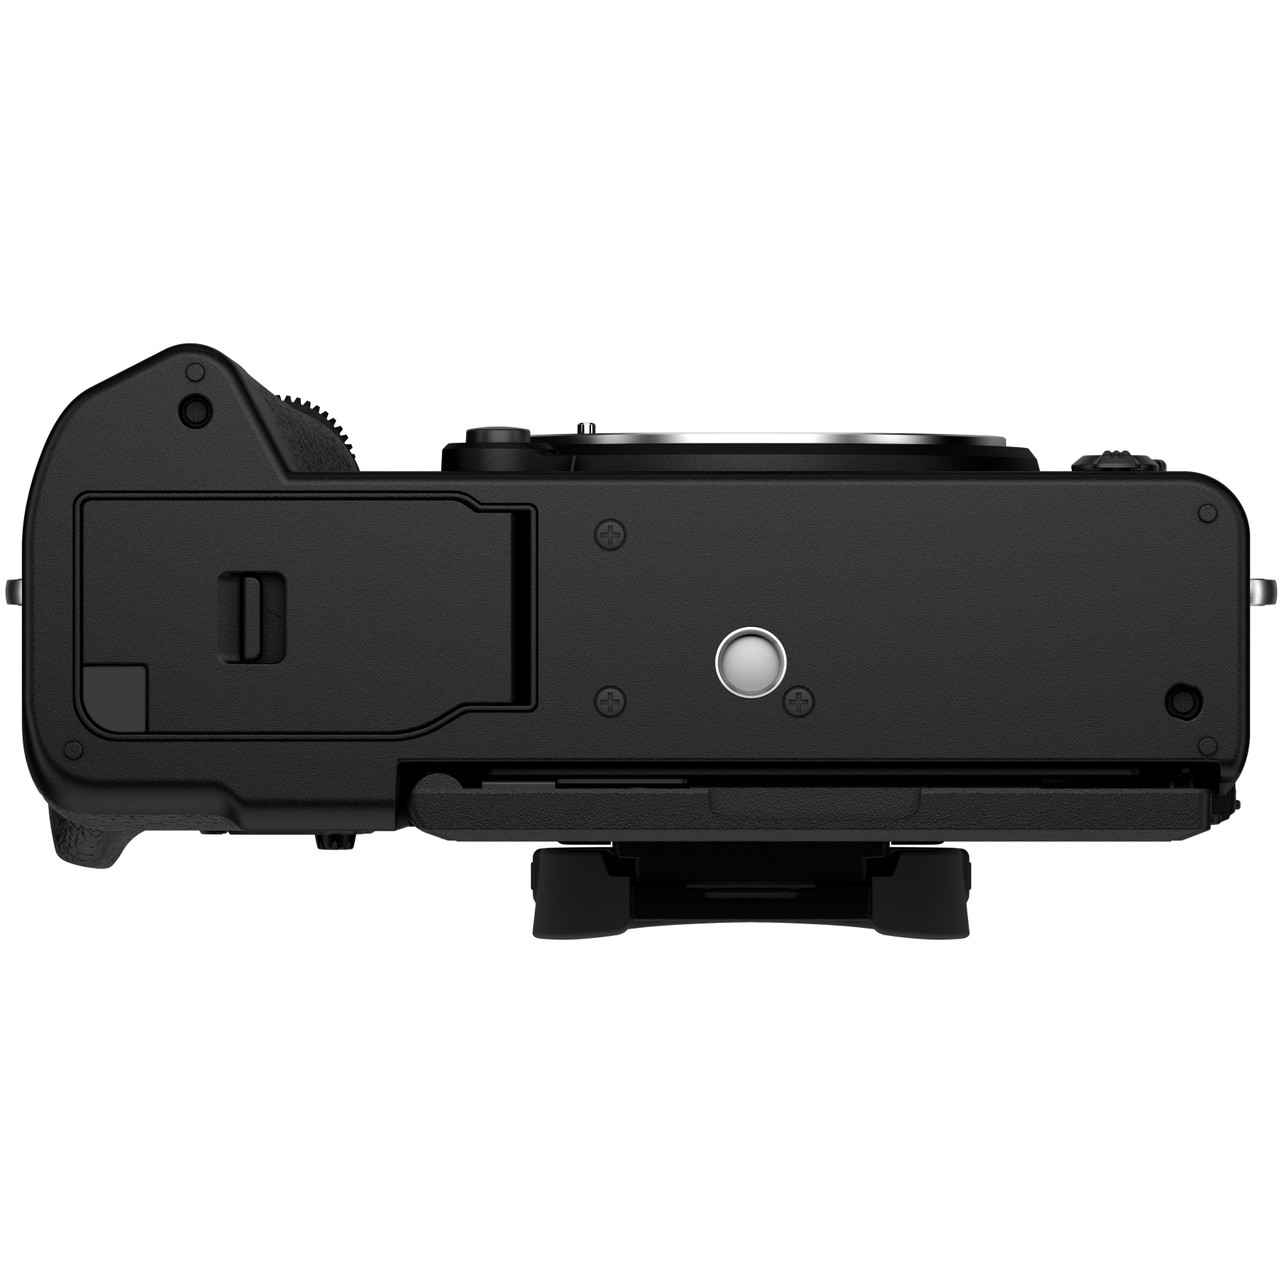 Fujifilm X-T5 negra